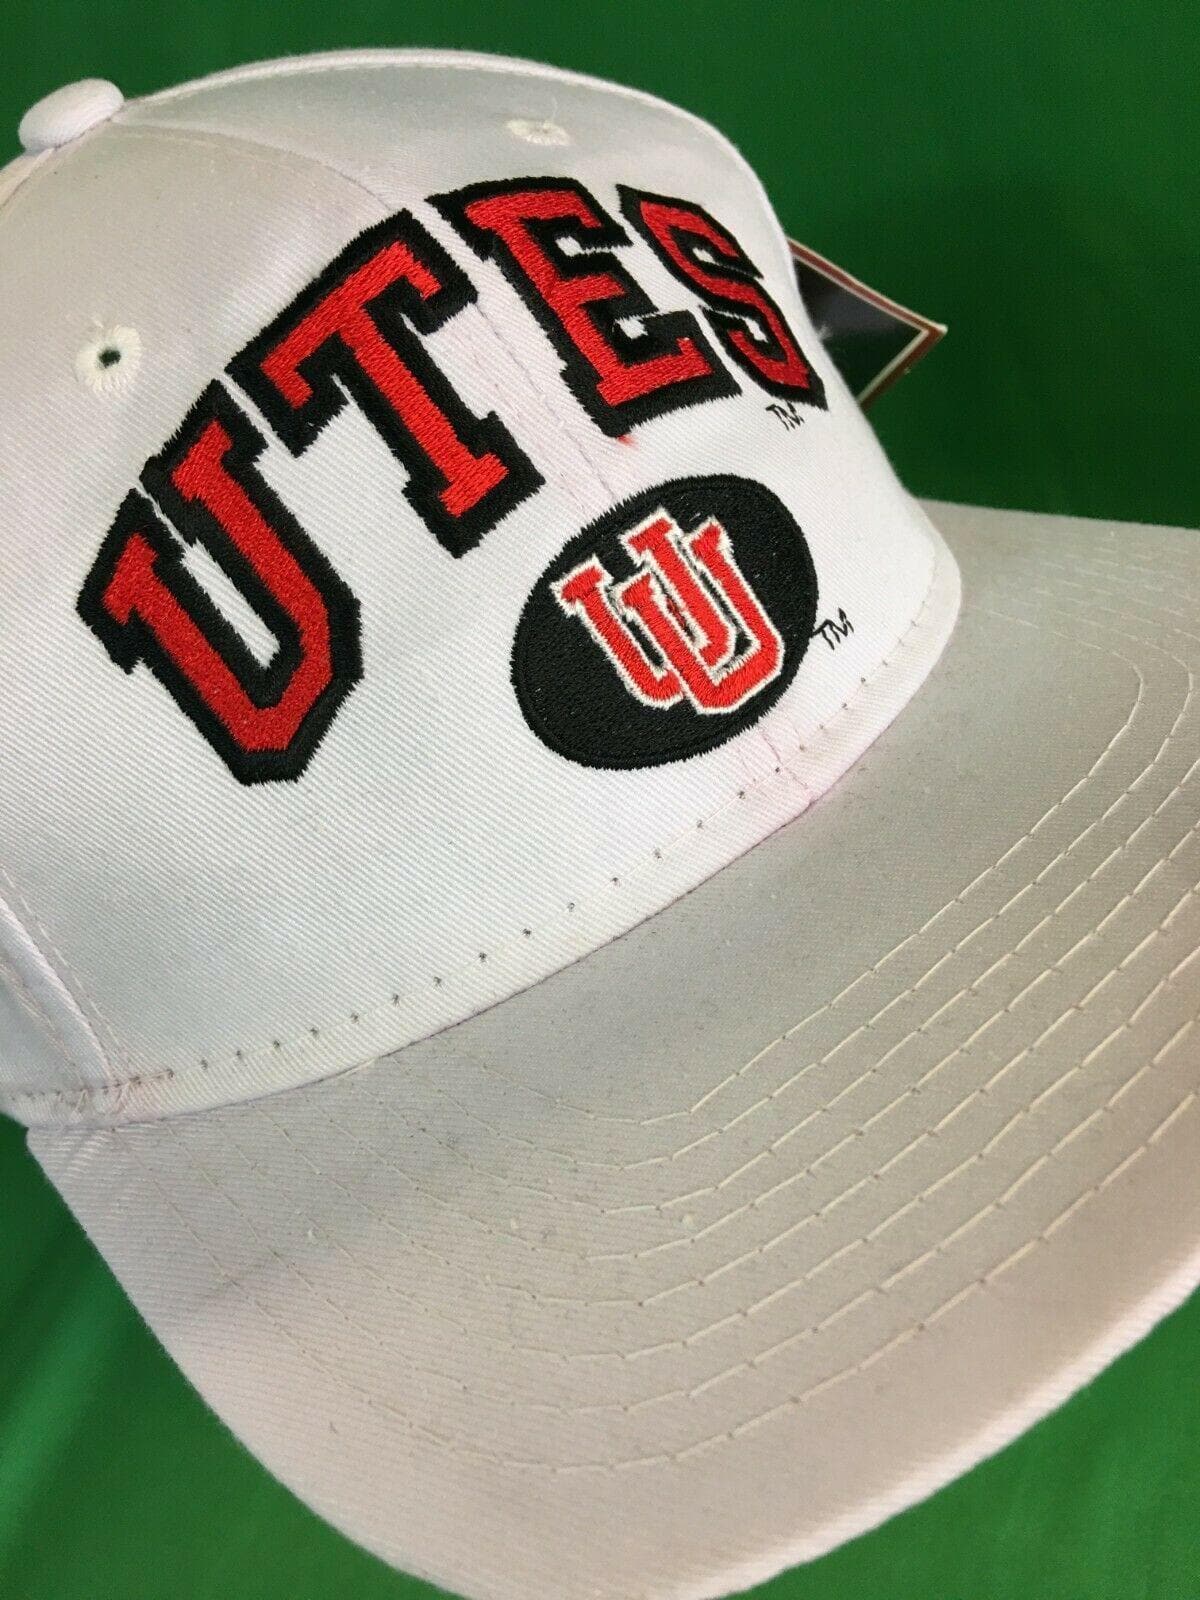 NCAA Utah Utes Zephyr Snapback Hat/Cap OSFM NWT